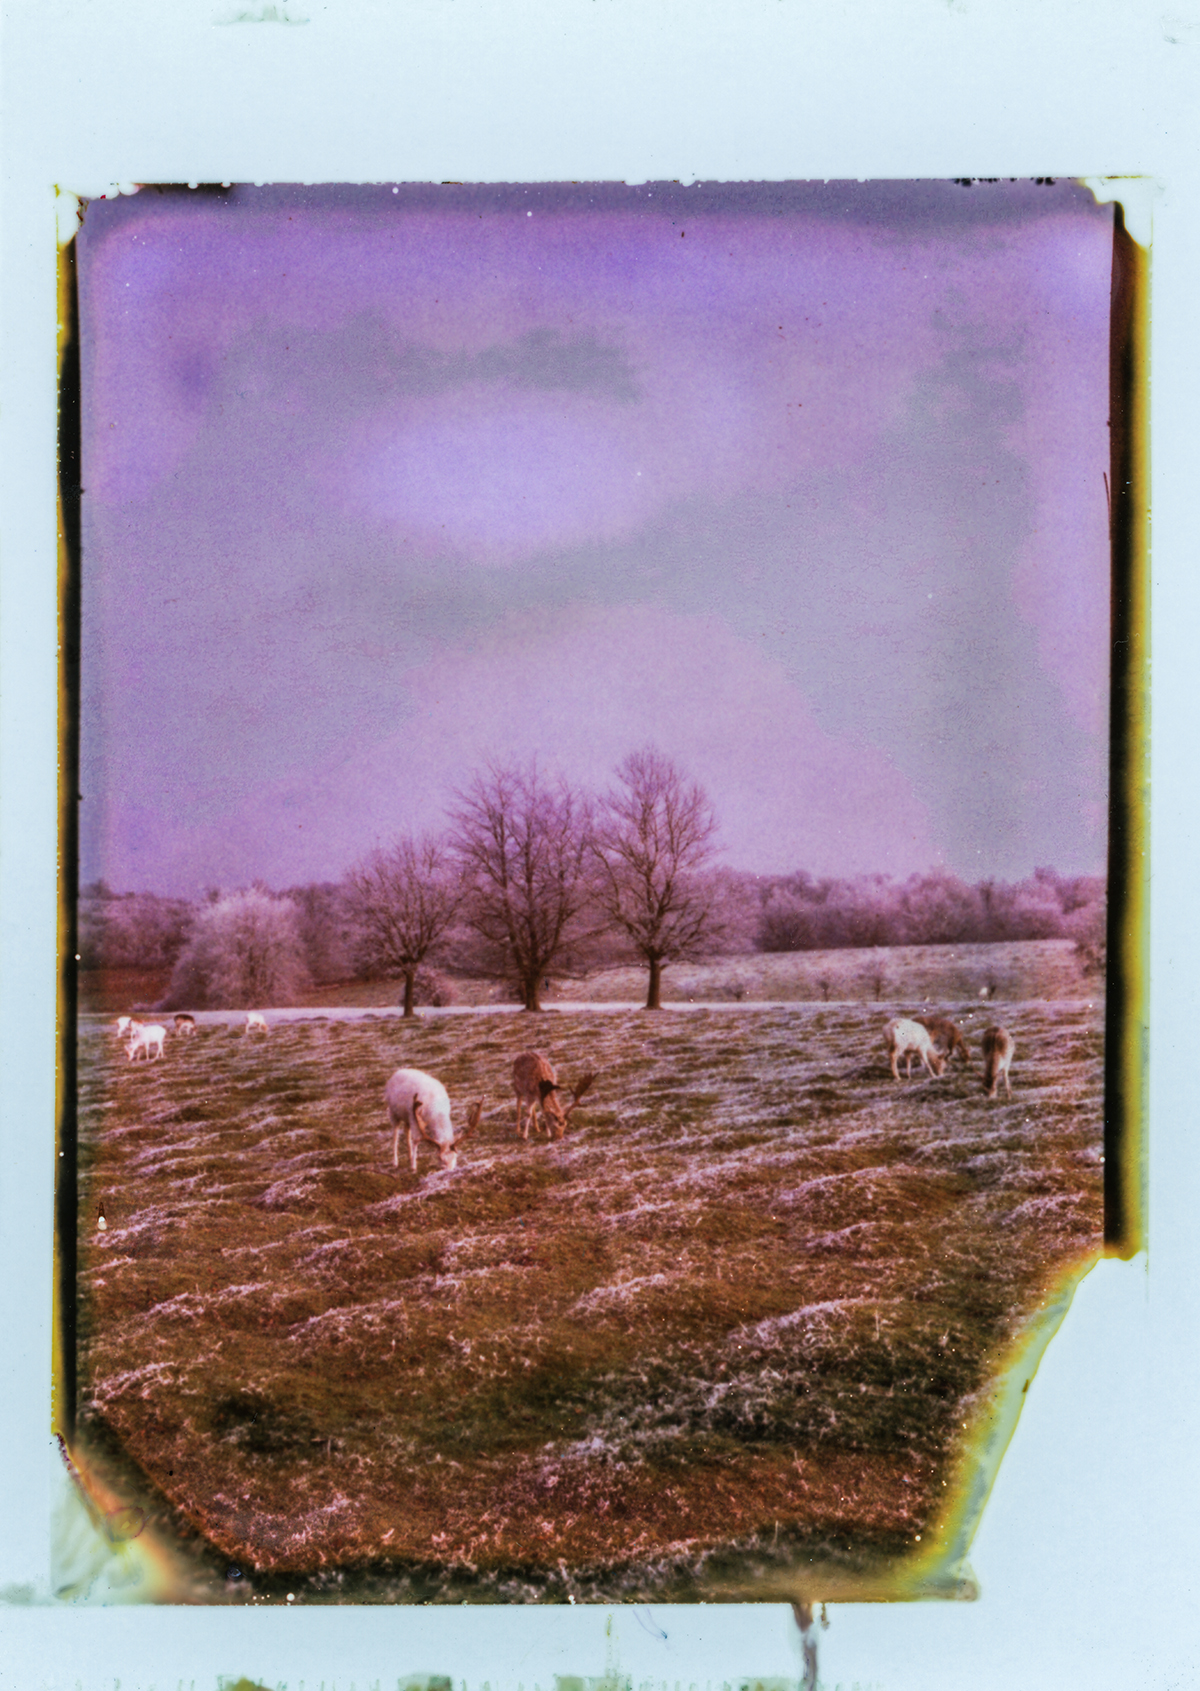 Icy Knole Park [Polaroid Land Camera 190]